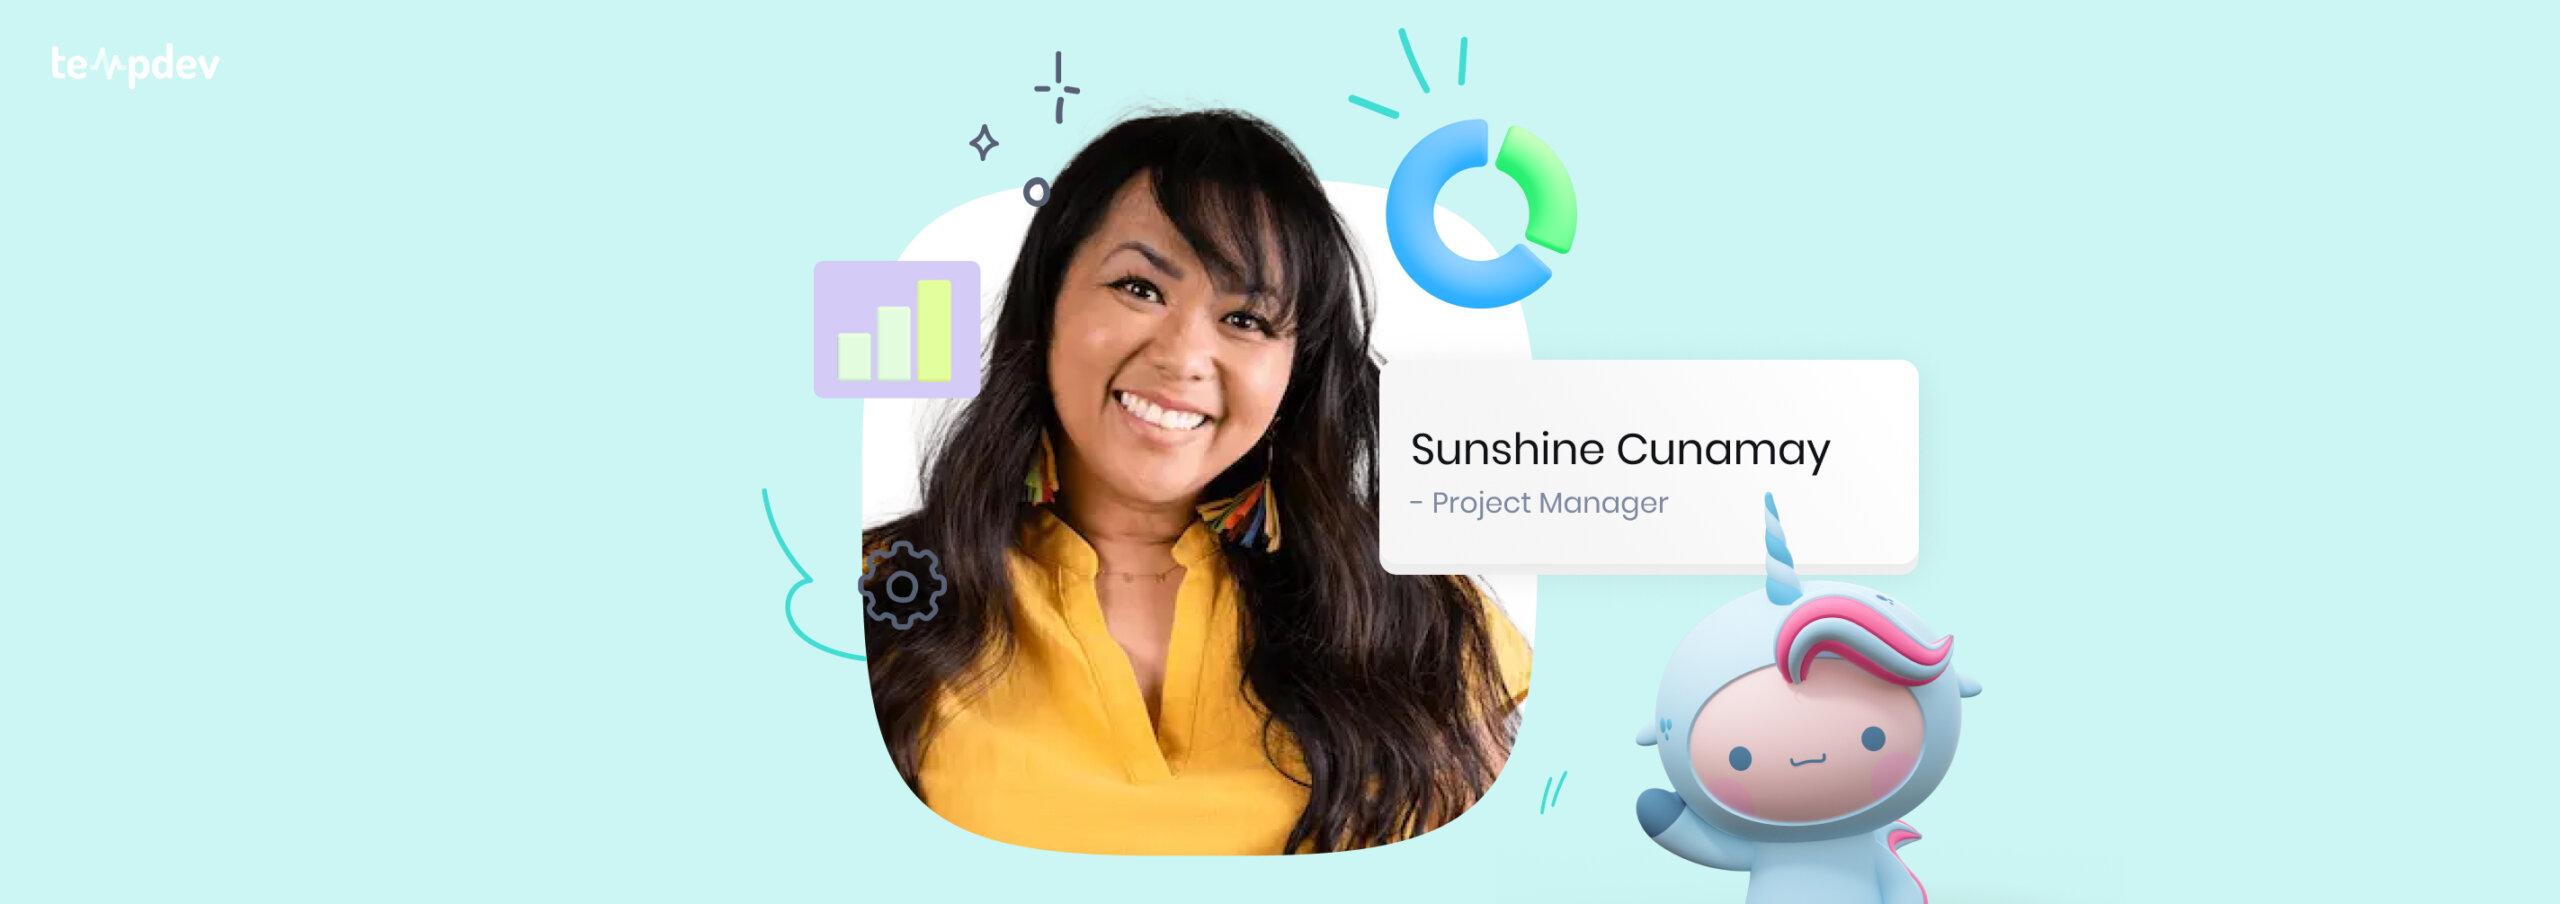 Meet Sunshine Cunamay: NextGen Project Manager